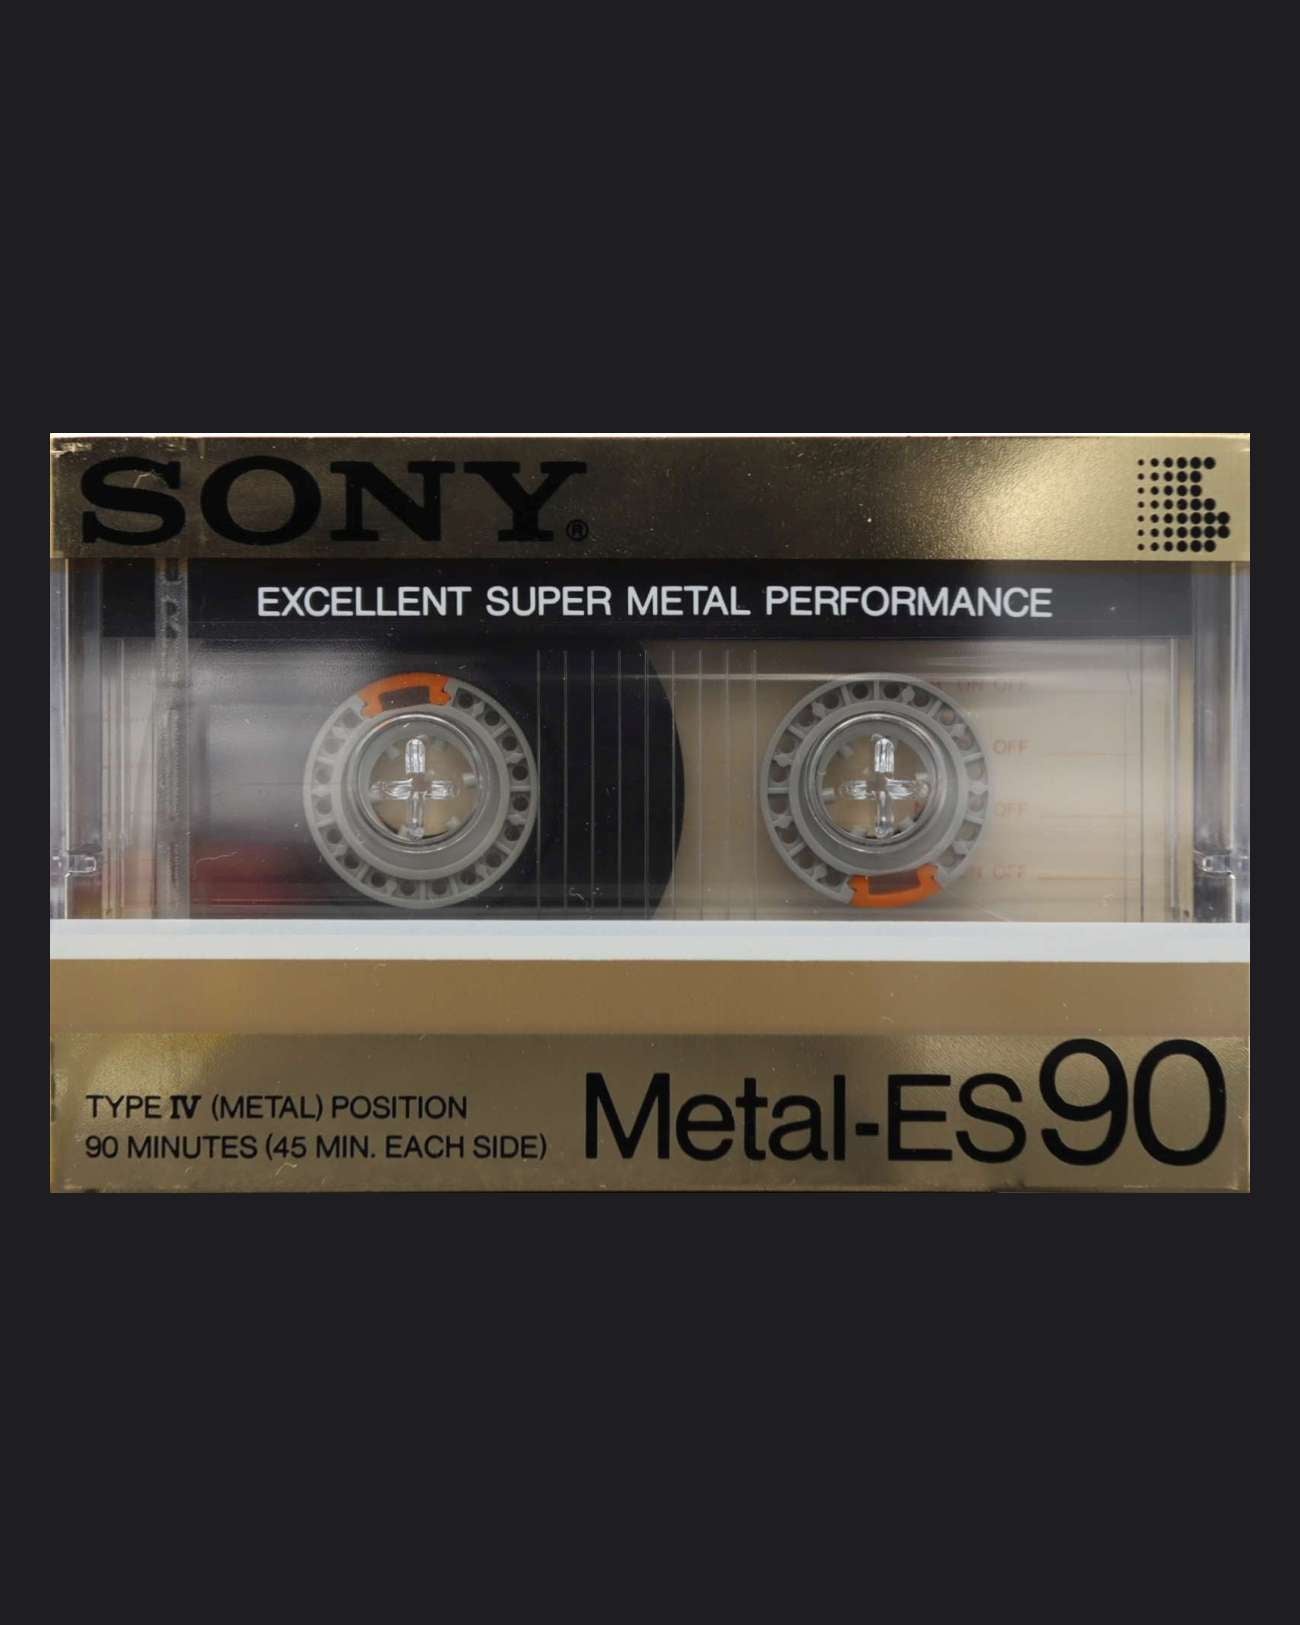 Sony Metal-ES (1985-1987 JP)